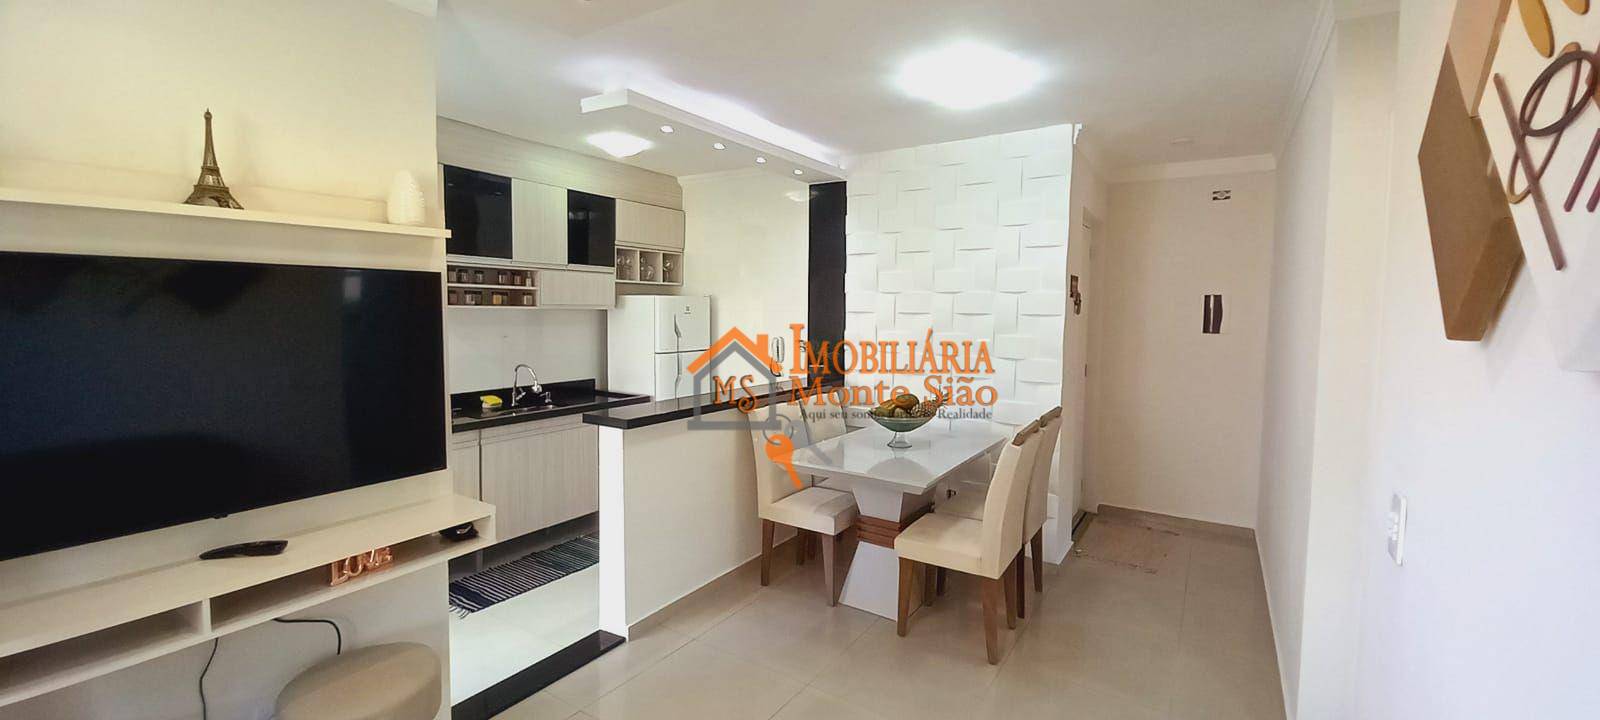 Apartamento com 2 dormitórios à venda, 50 m² por R$ 233.000,00 - Jardim Guilhermino - Guarulhos/SP